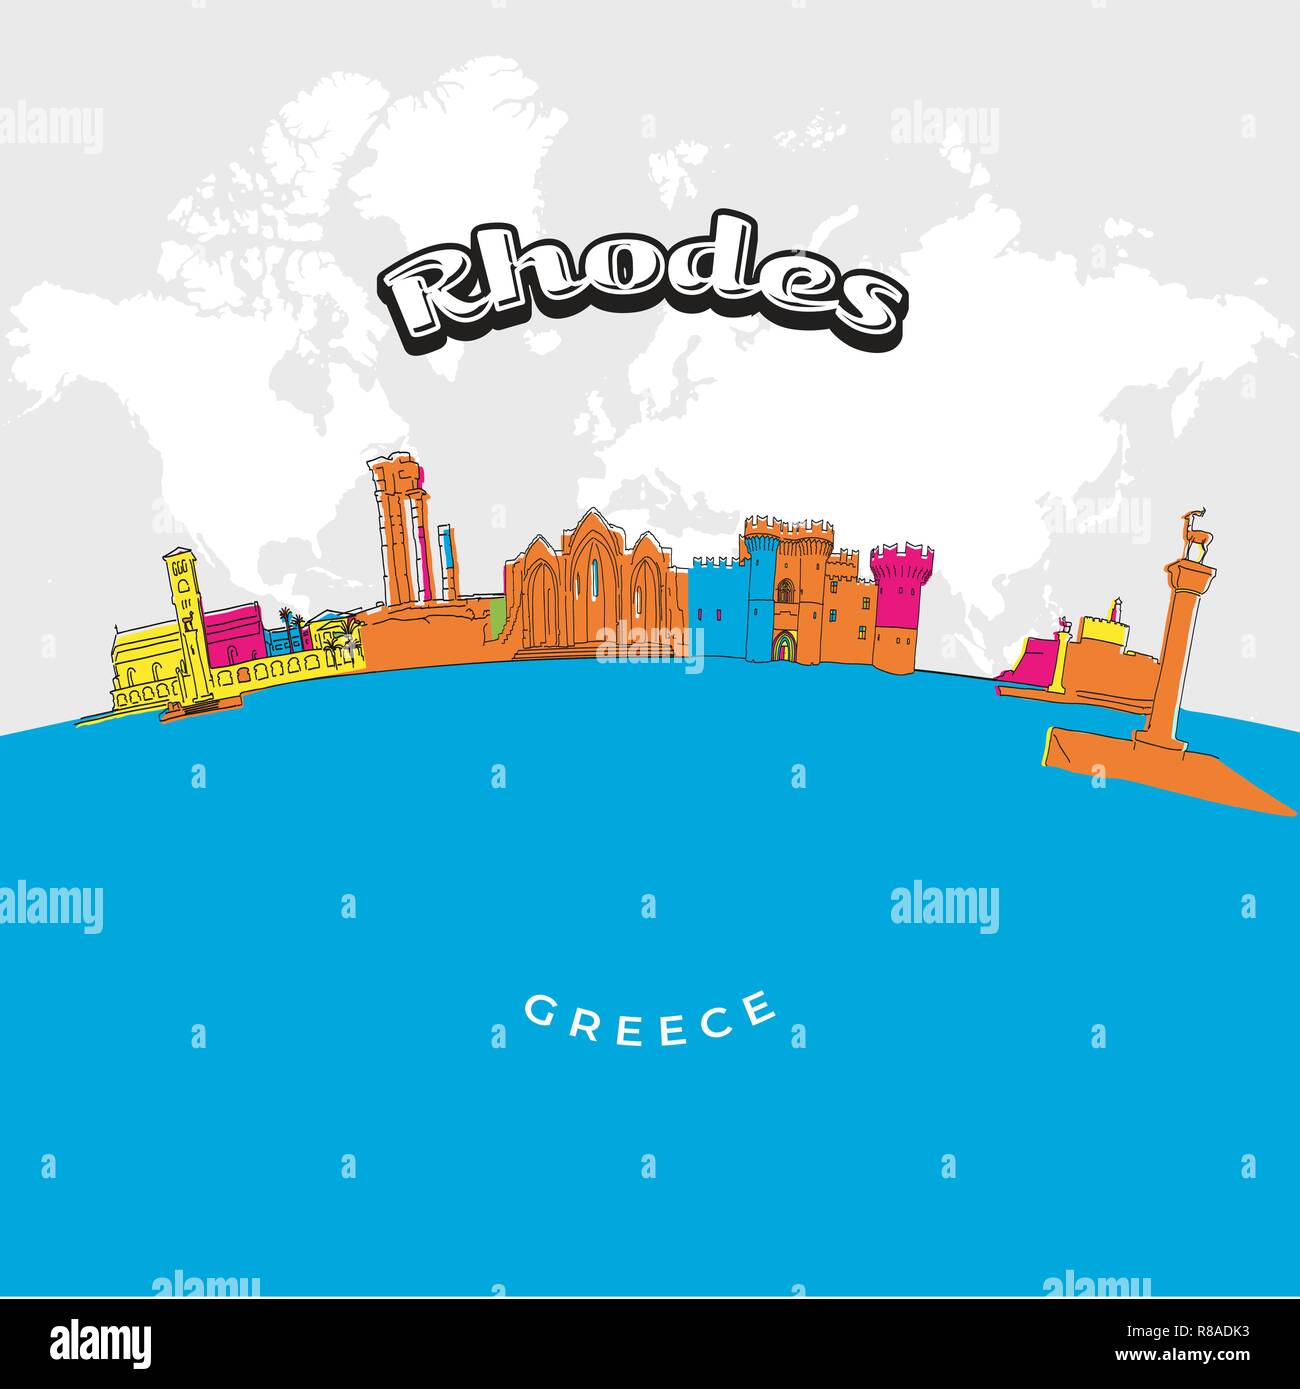 Rhodes Grèce Panorama coloré. Vector illustration dessinée à la main. Célèbre série de destinations de voyage. Illustration de Vecteur